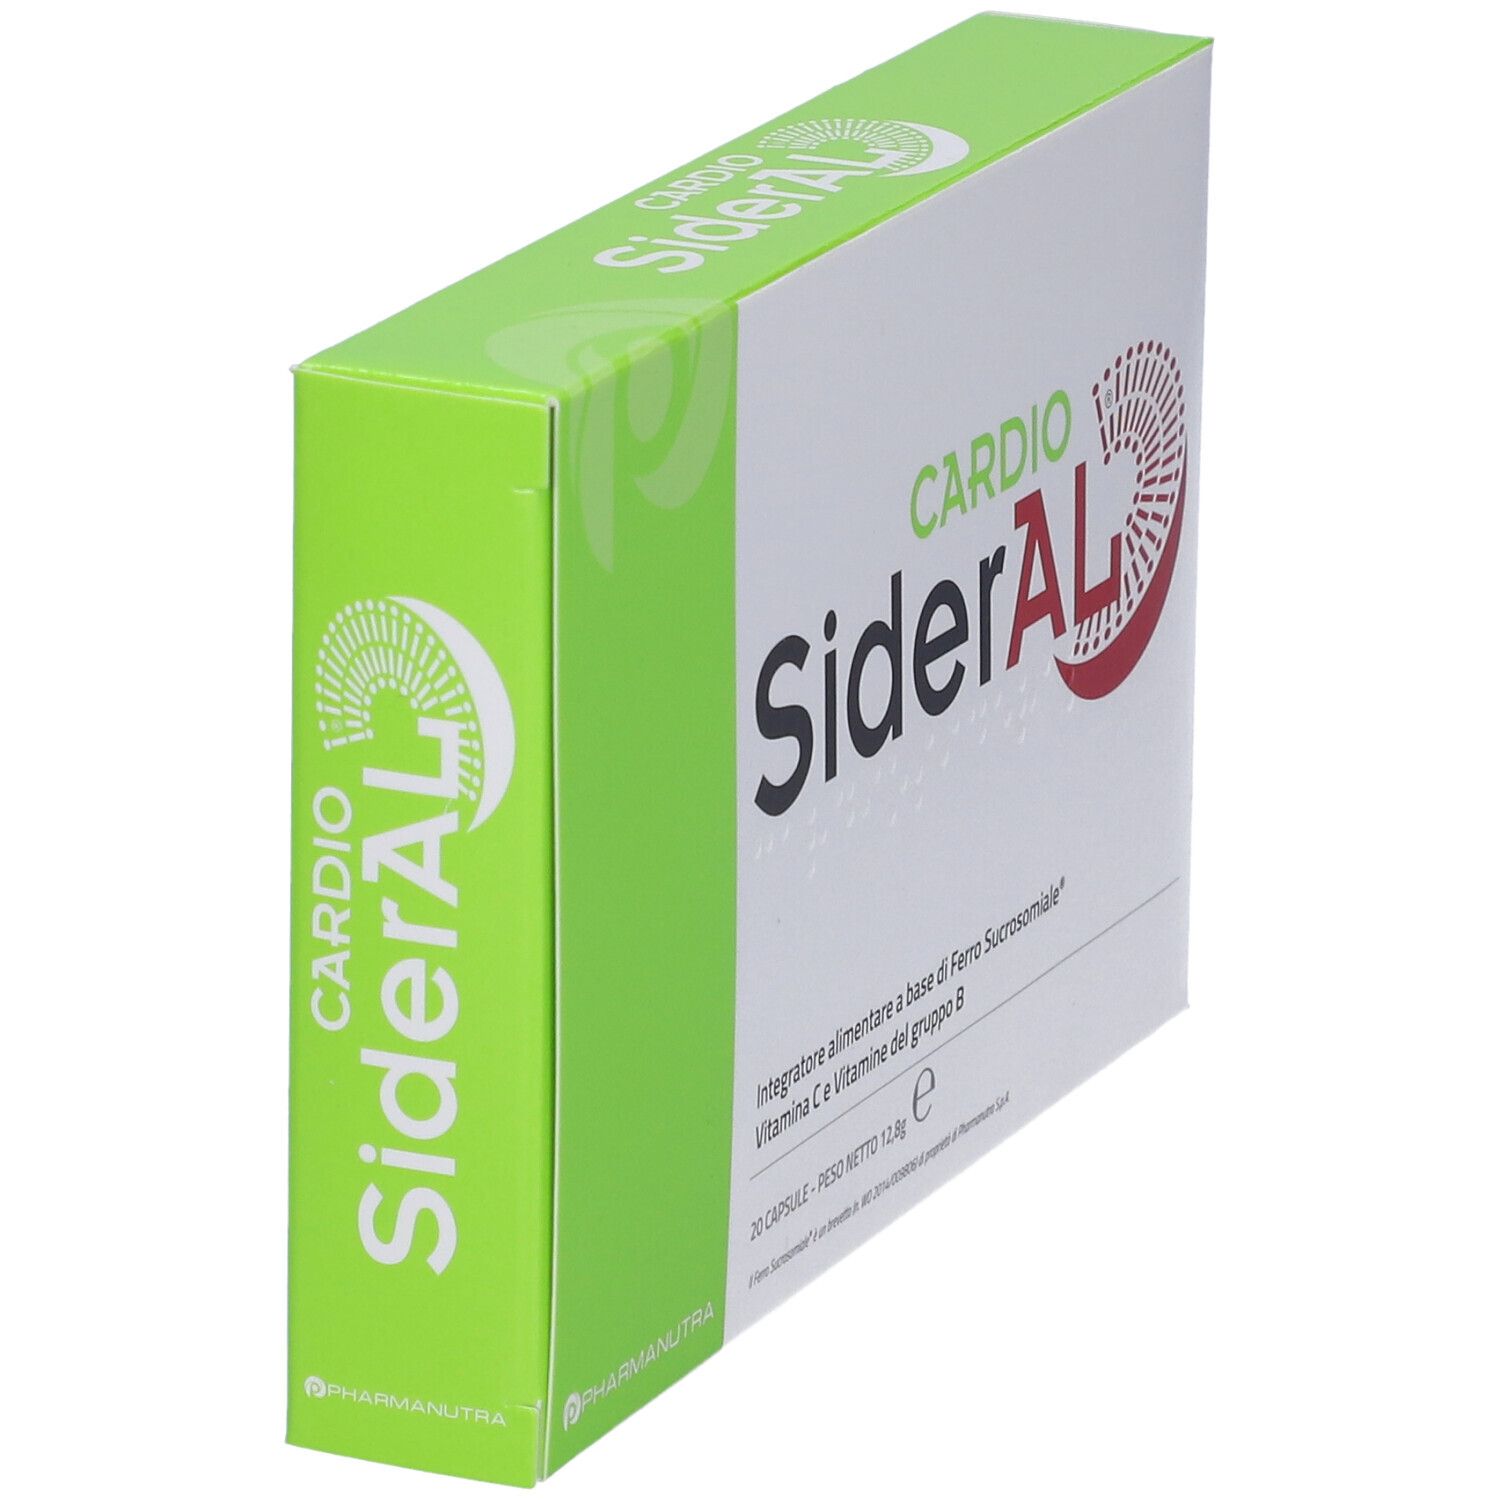 SiderAl 20 Capsule  Farmacia Online di Fiducia